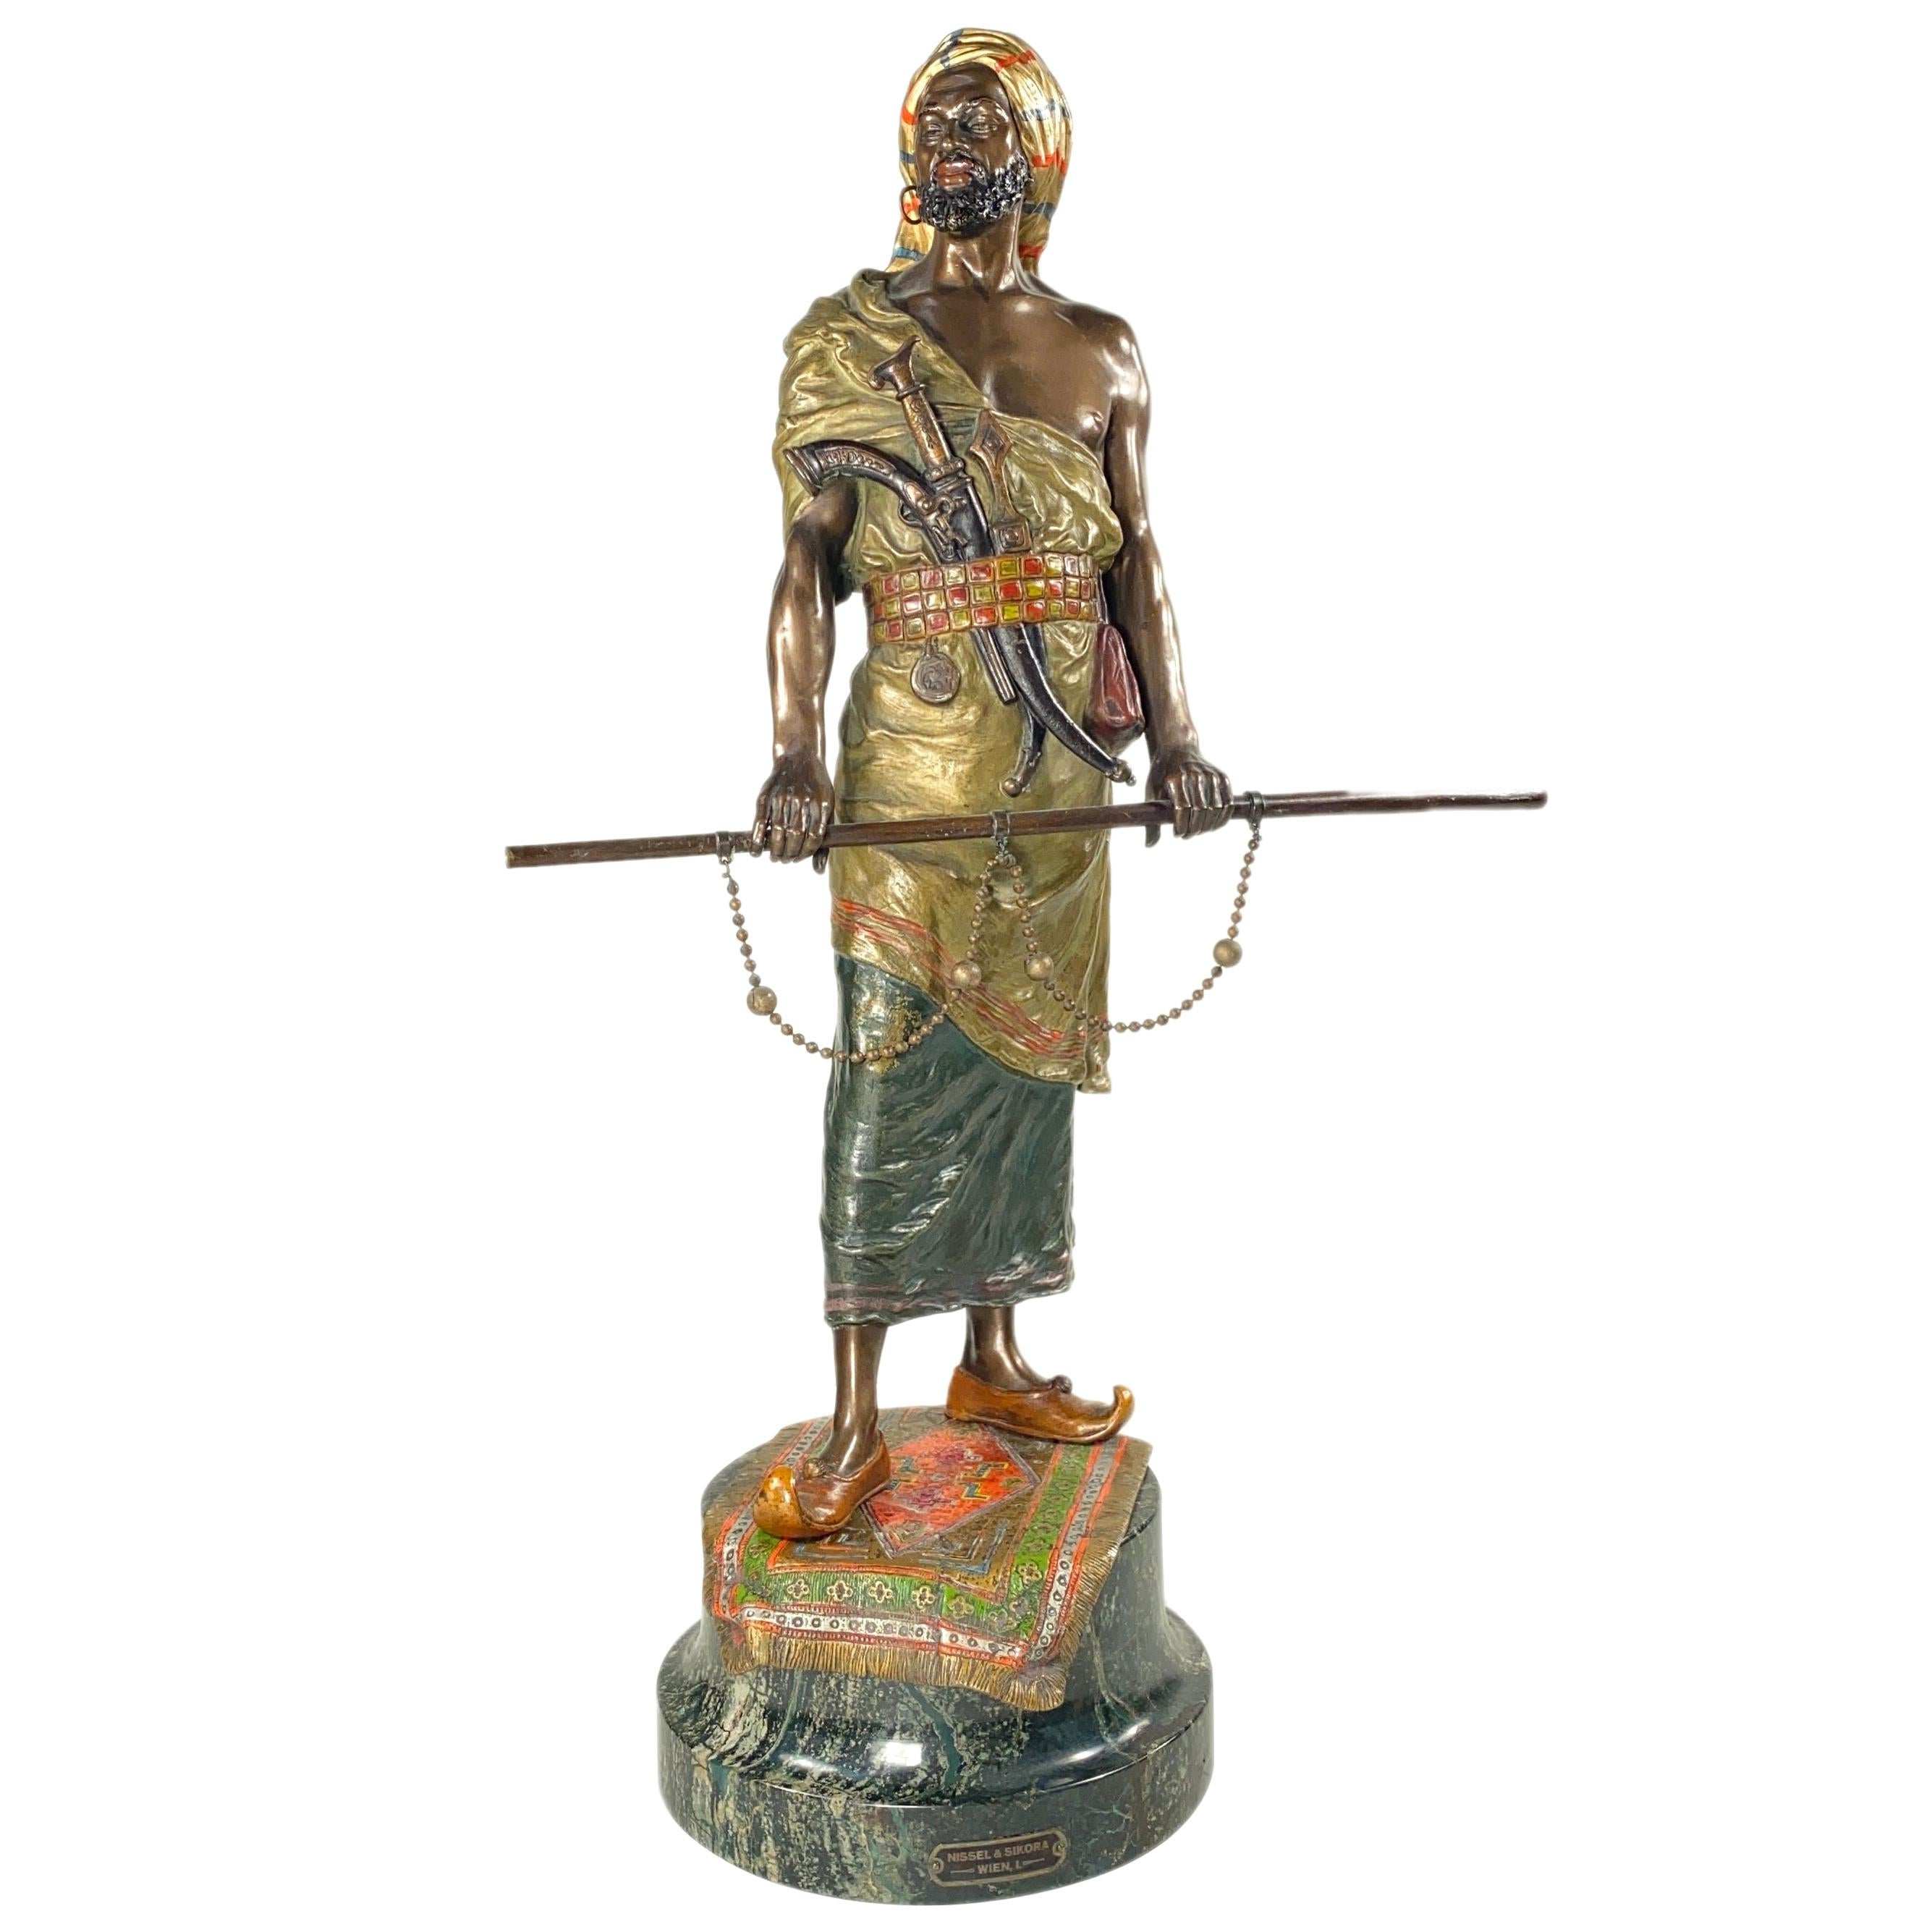 Austrian Art Nouveau Bronze Orientalist Sculpture of an Arab Warrior